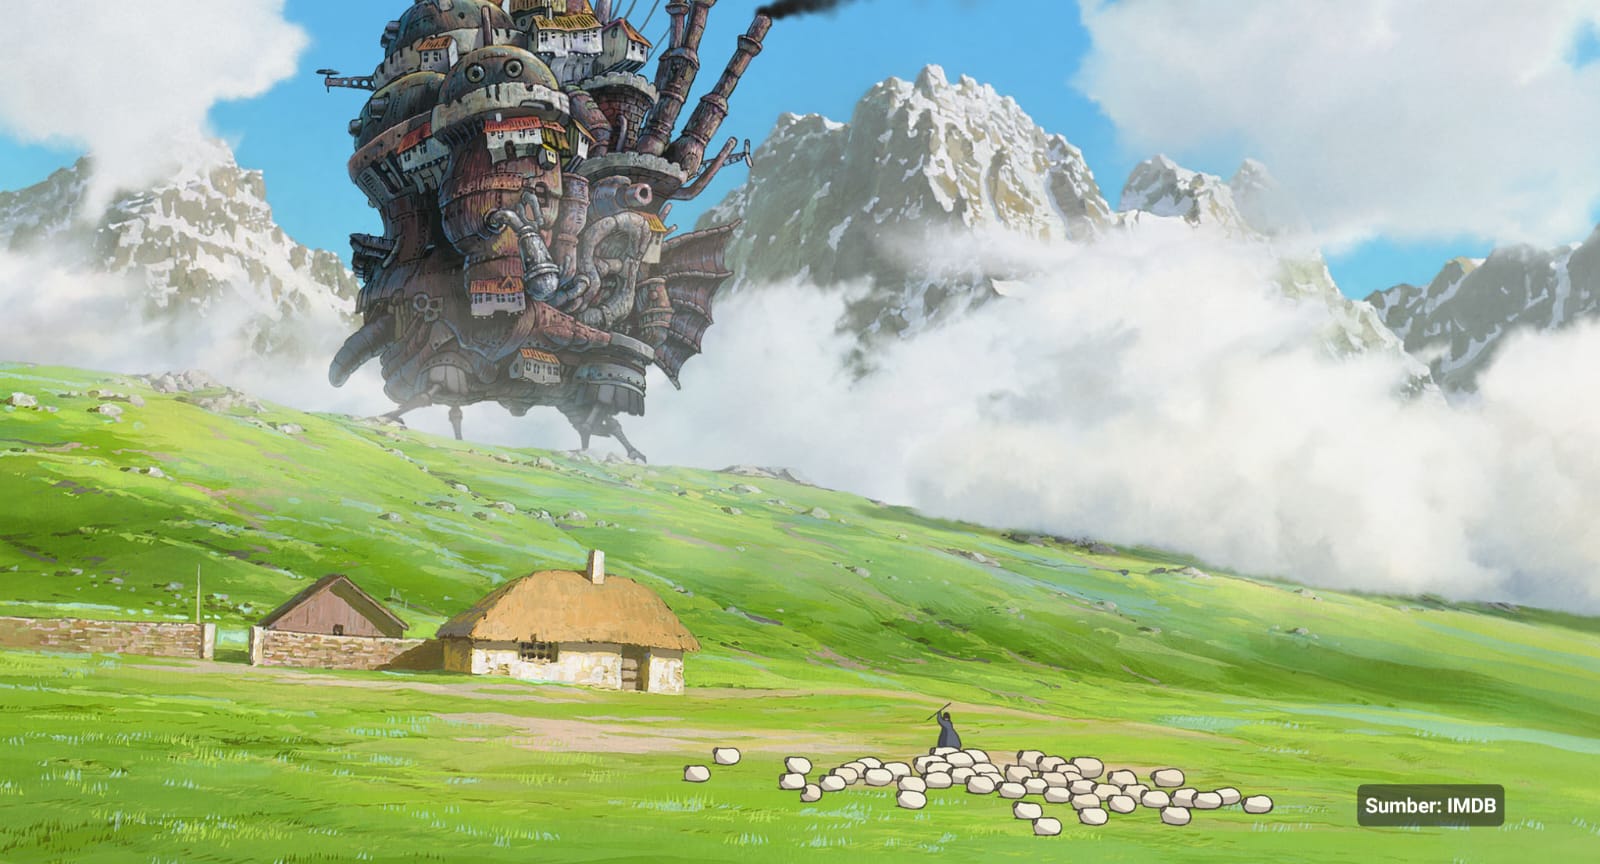 Kalau Kamu Tenang dan Santai Saat Nonton Animasi Ghibli, Kamu Enggak Sendiri